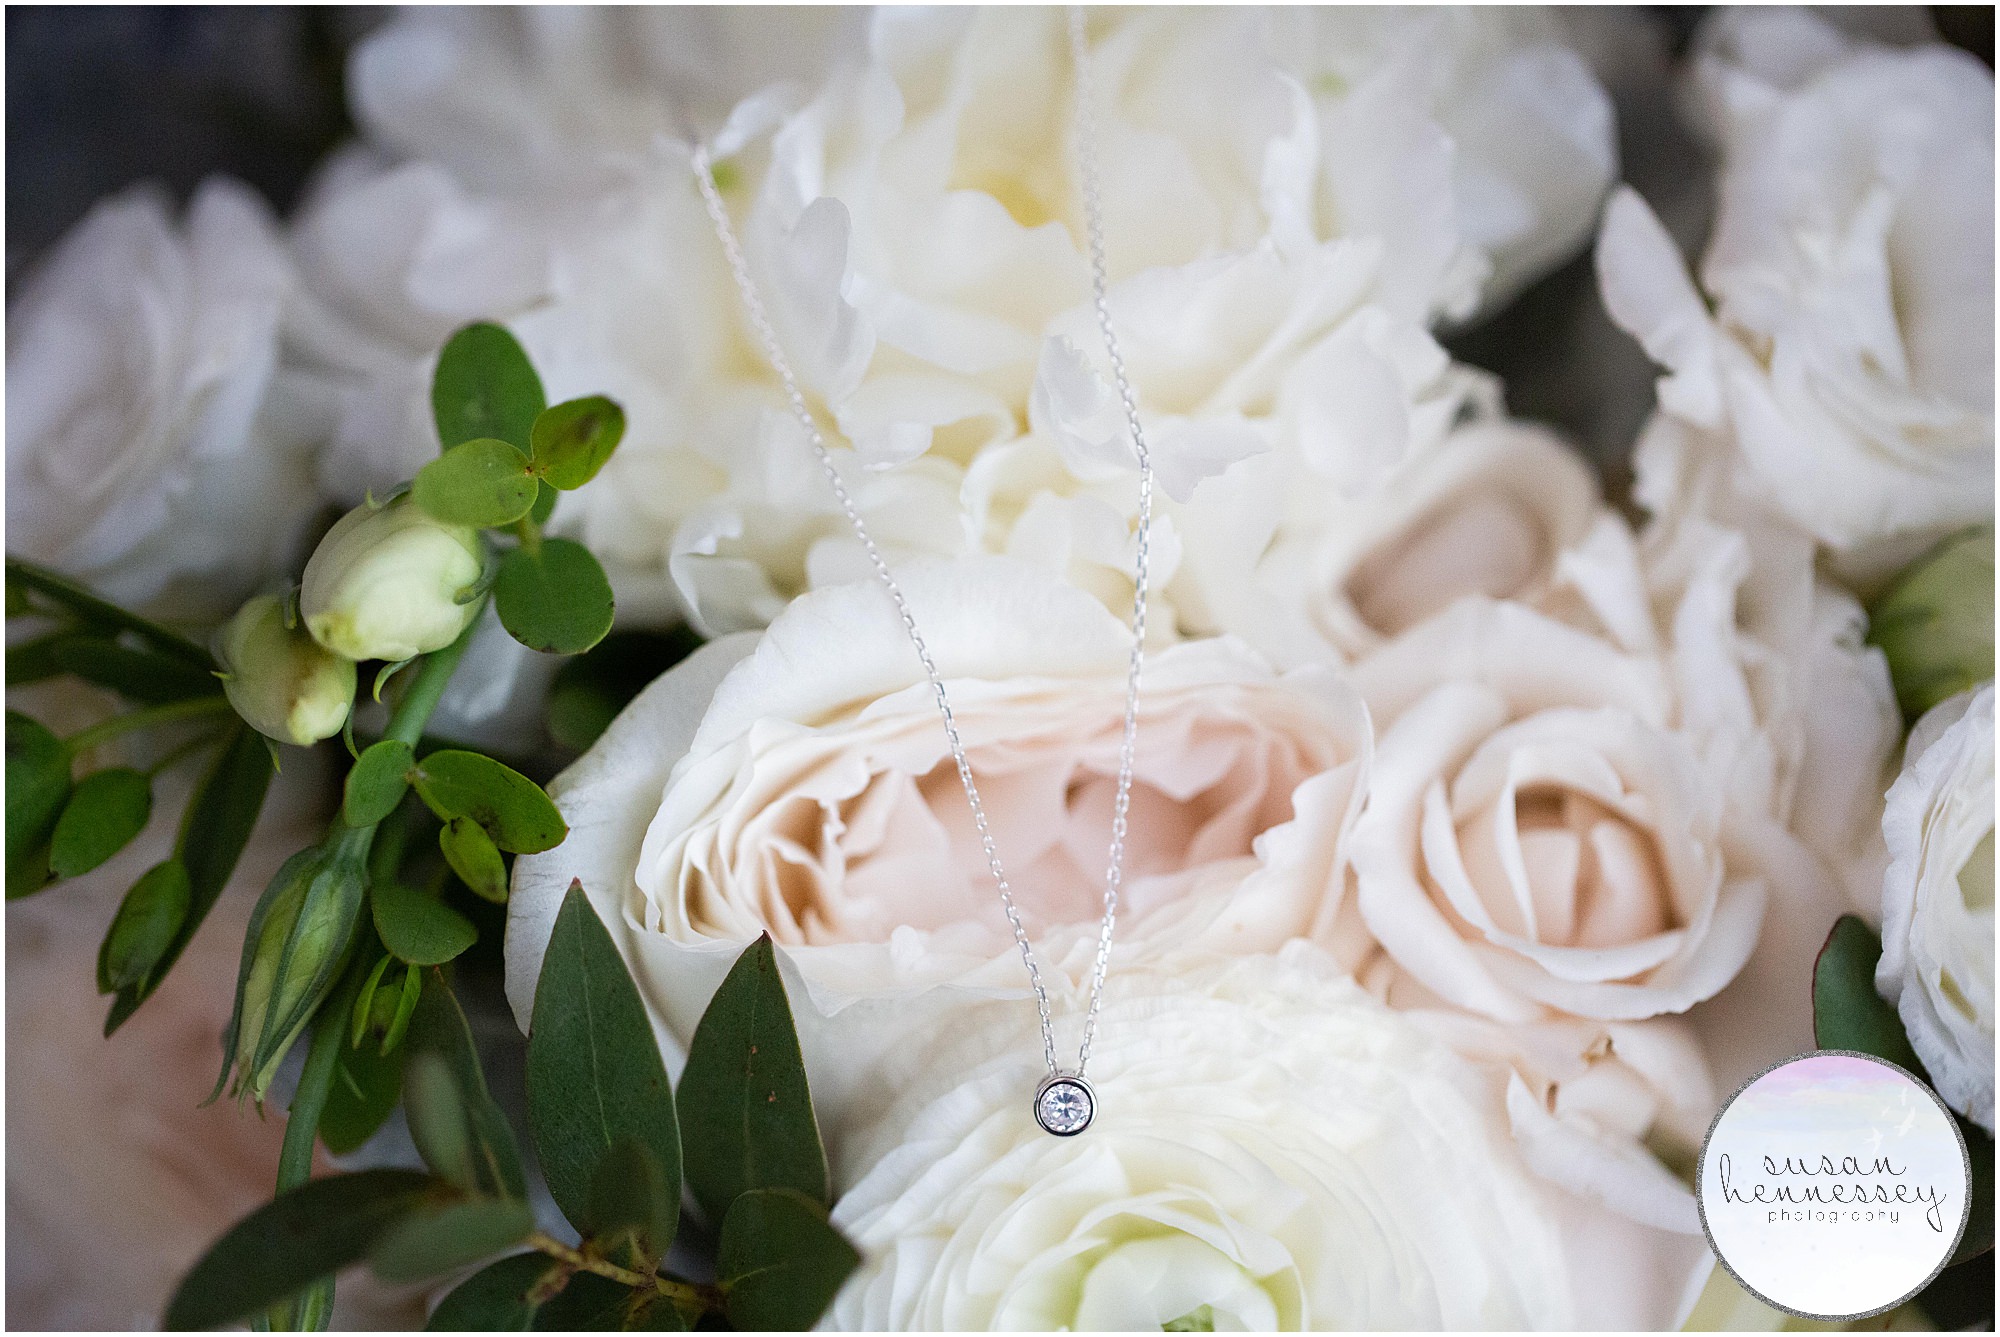 Bride's necklace on bouquet.